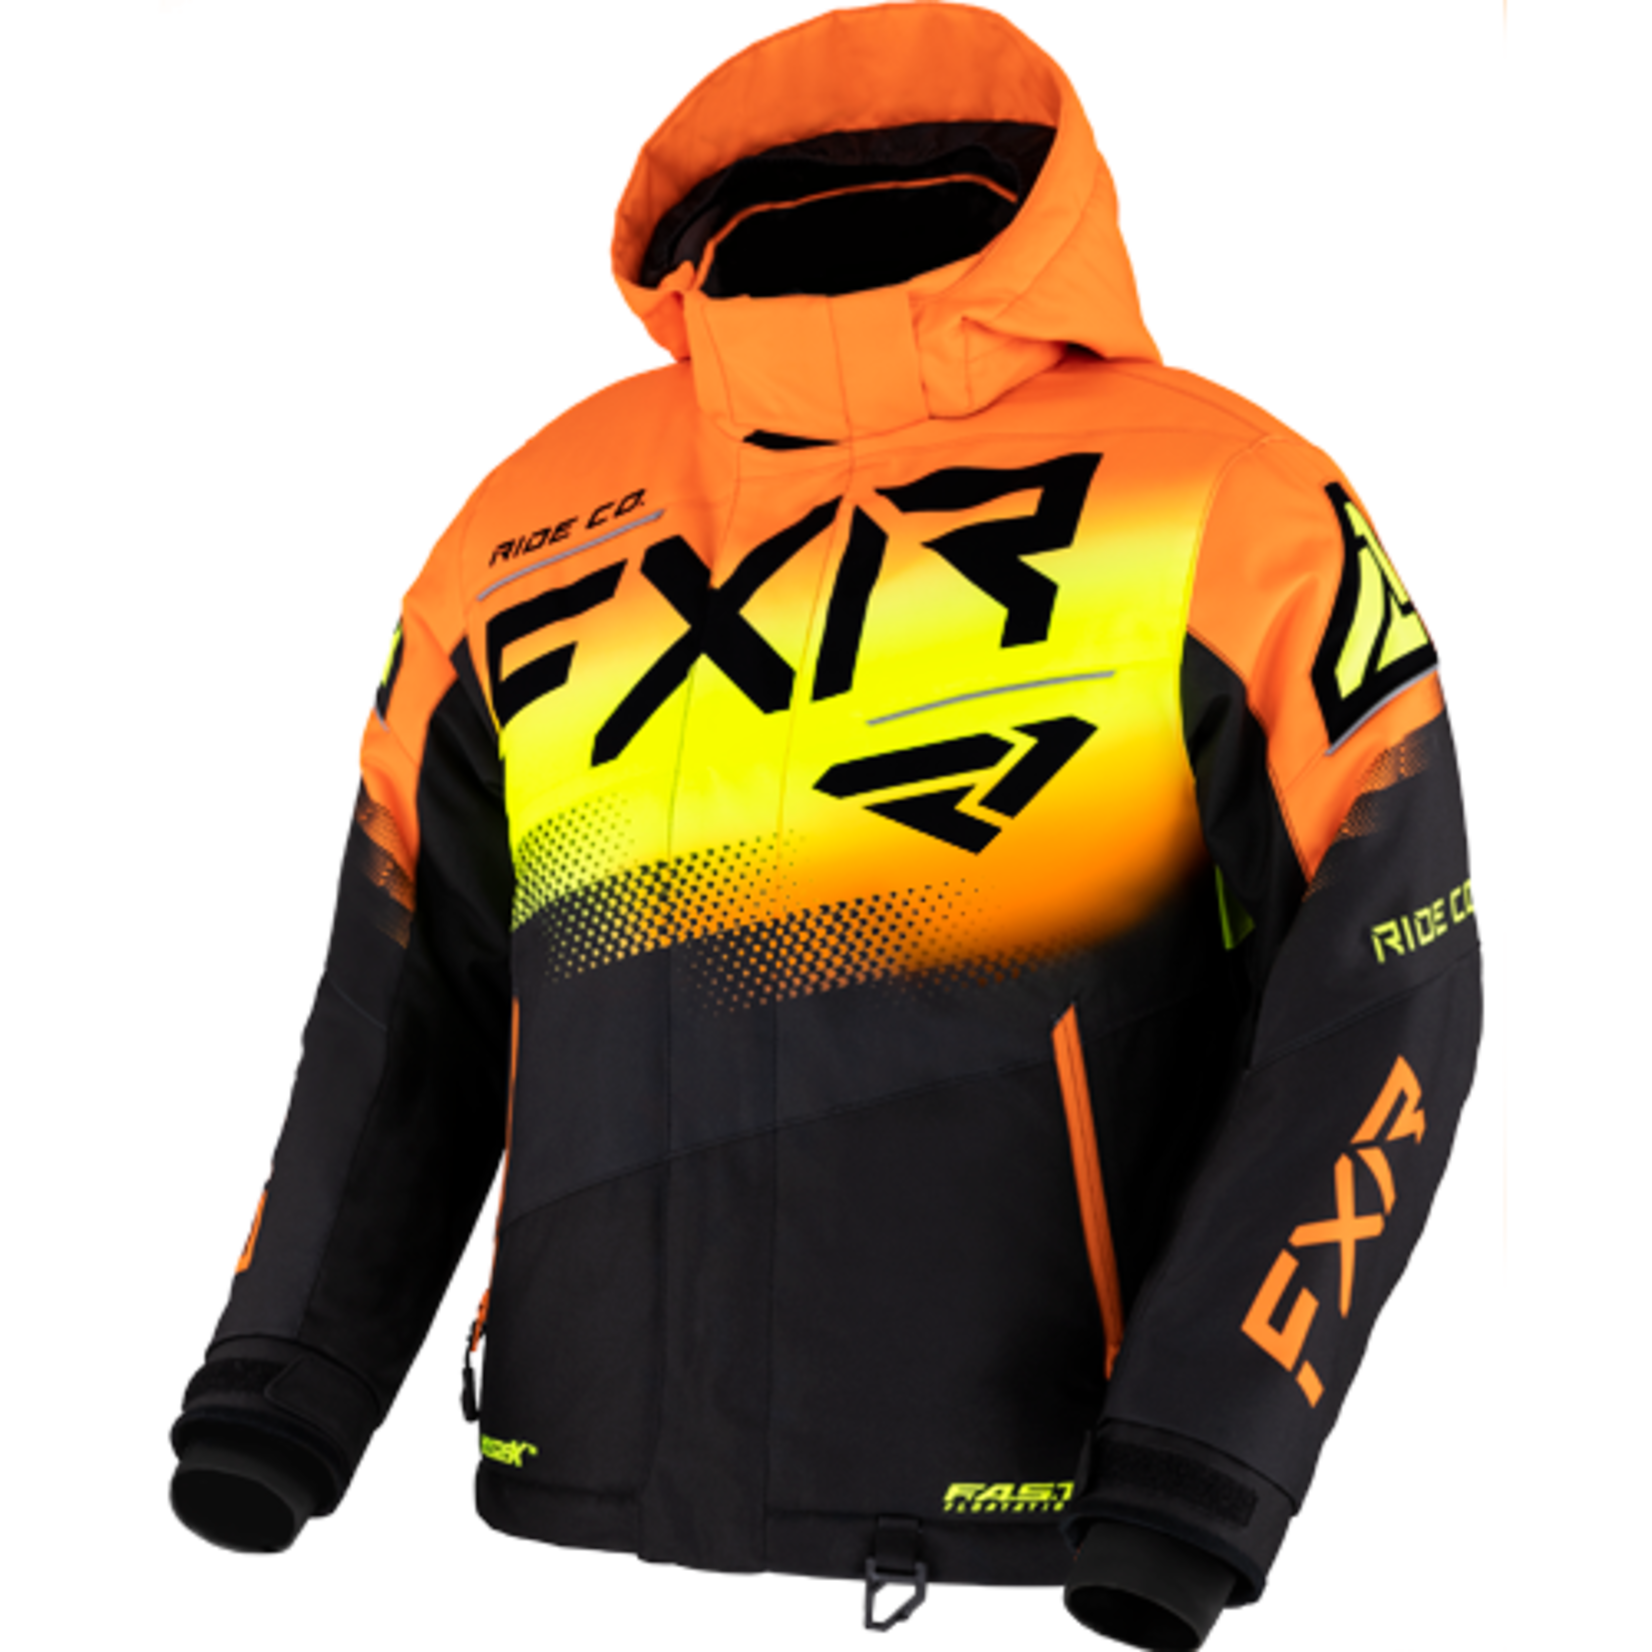 FXR FXR Winter Jacket, Boost, Youth, Boys